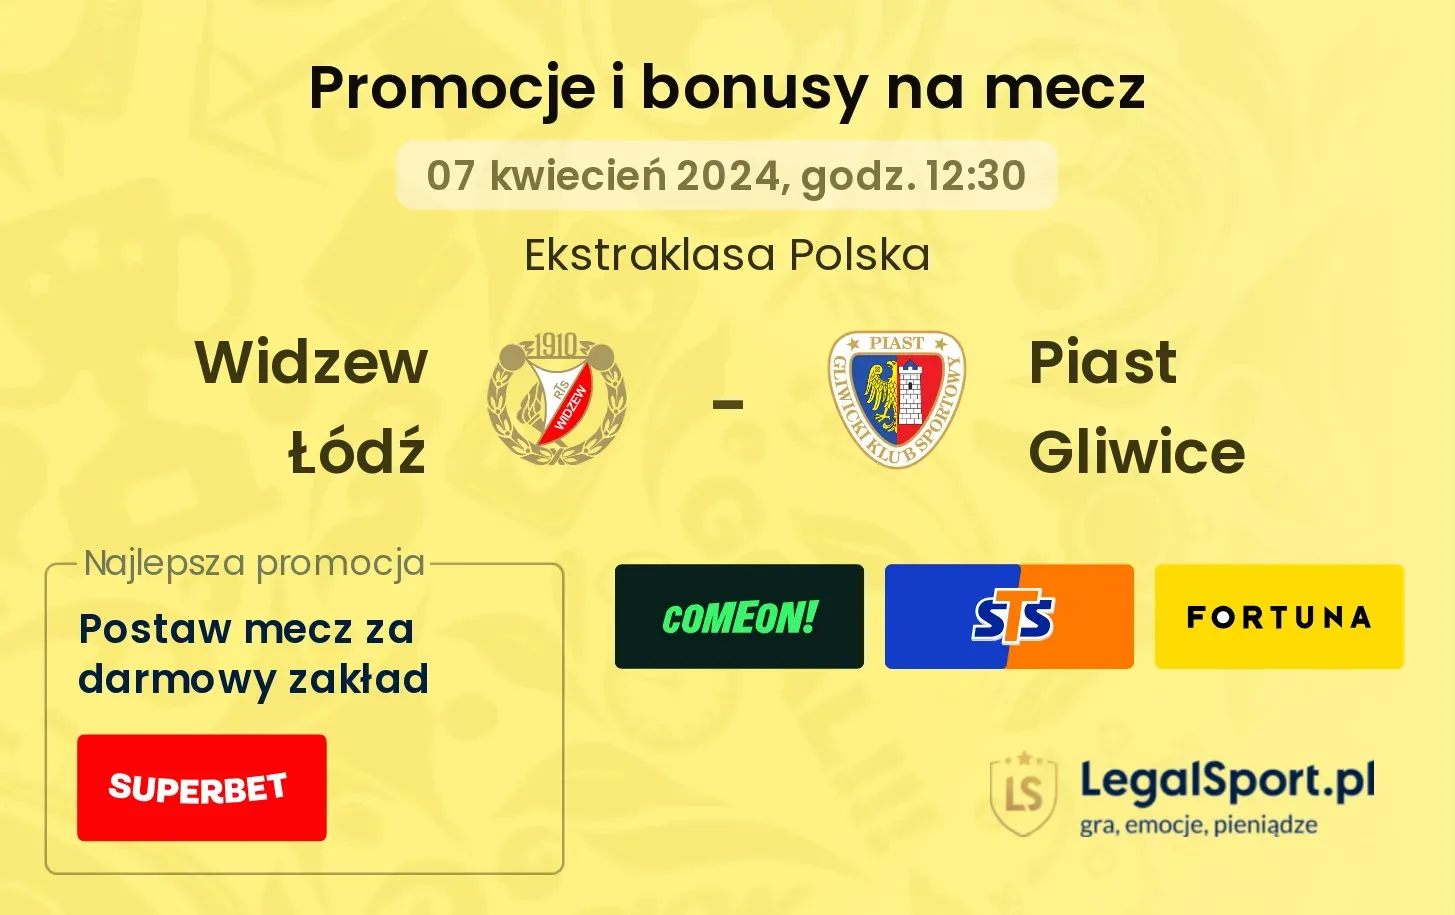 Widzew Łódź - Piast Gliwice promocje bonusy na mecz